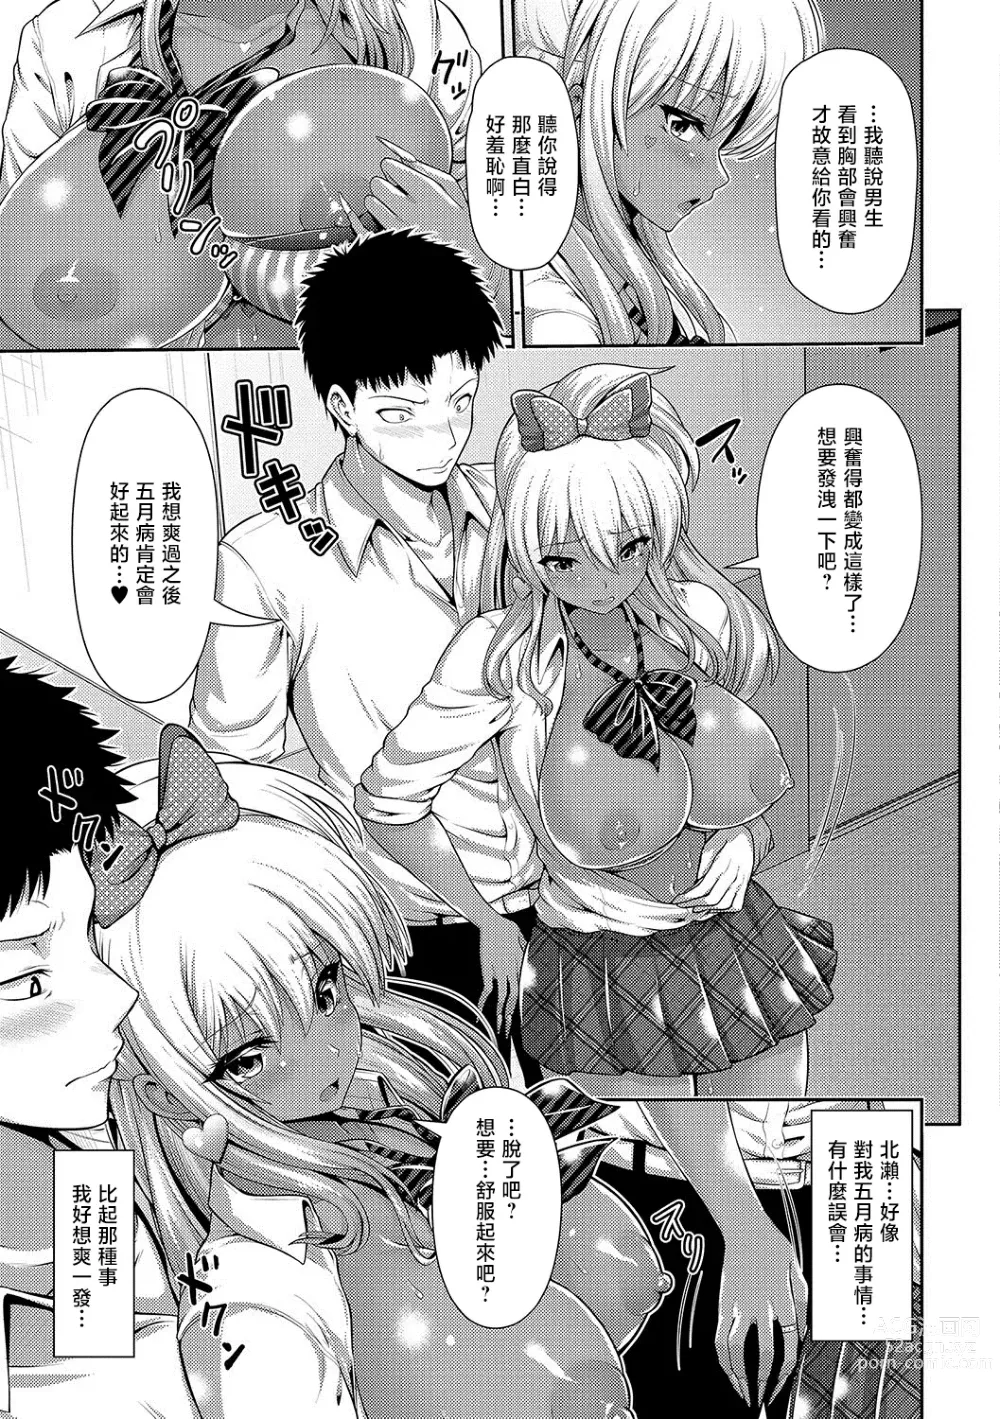 Page 5 of manga Gogatsubyou? Kuro Gal JK Hatsujou Chiryou